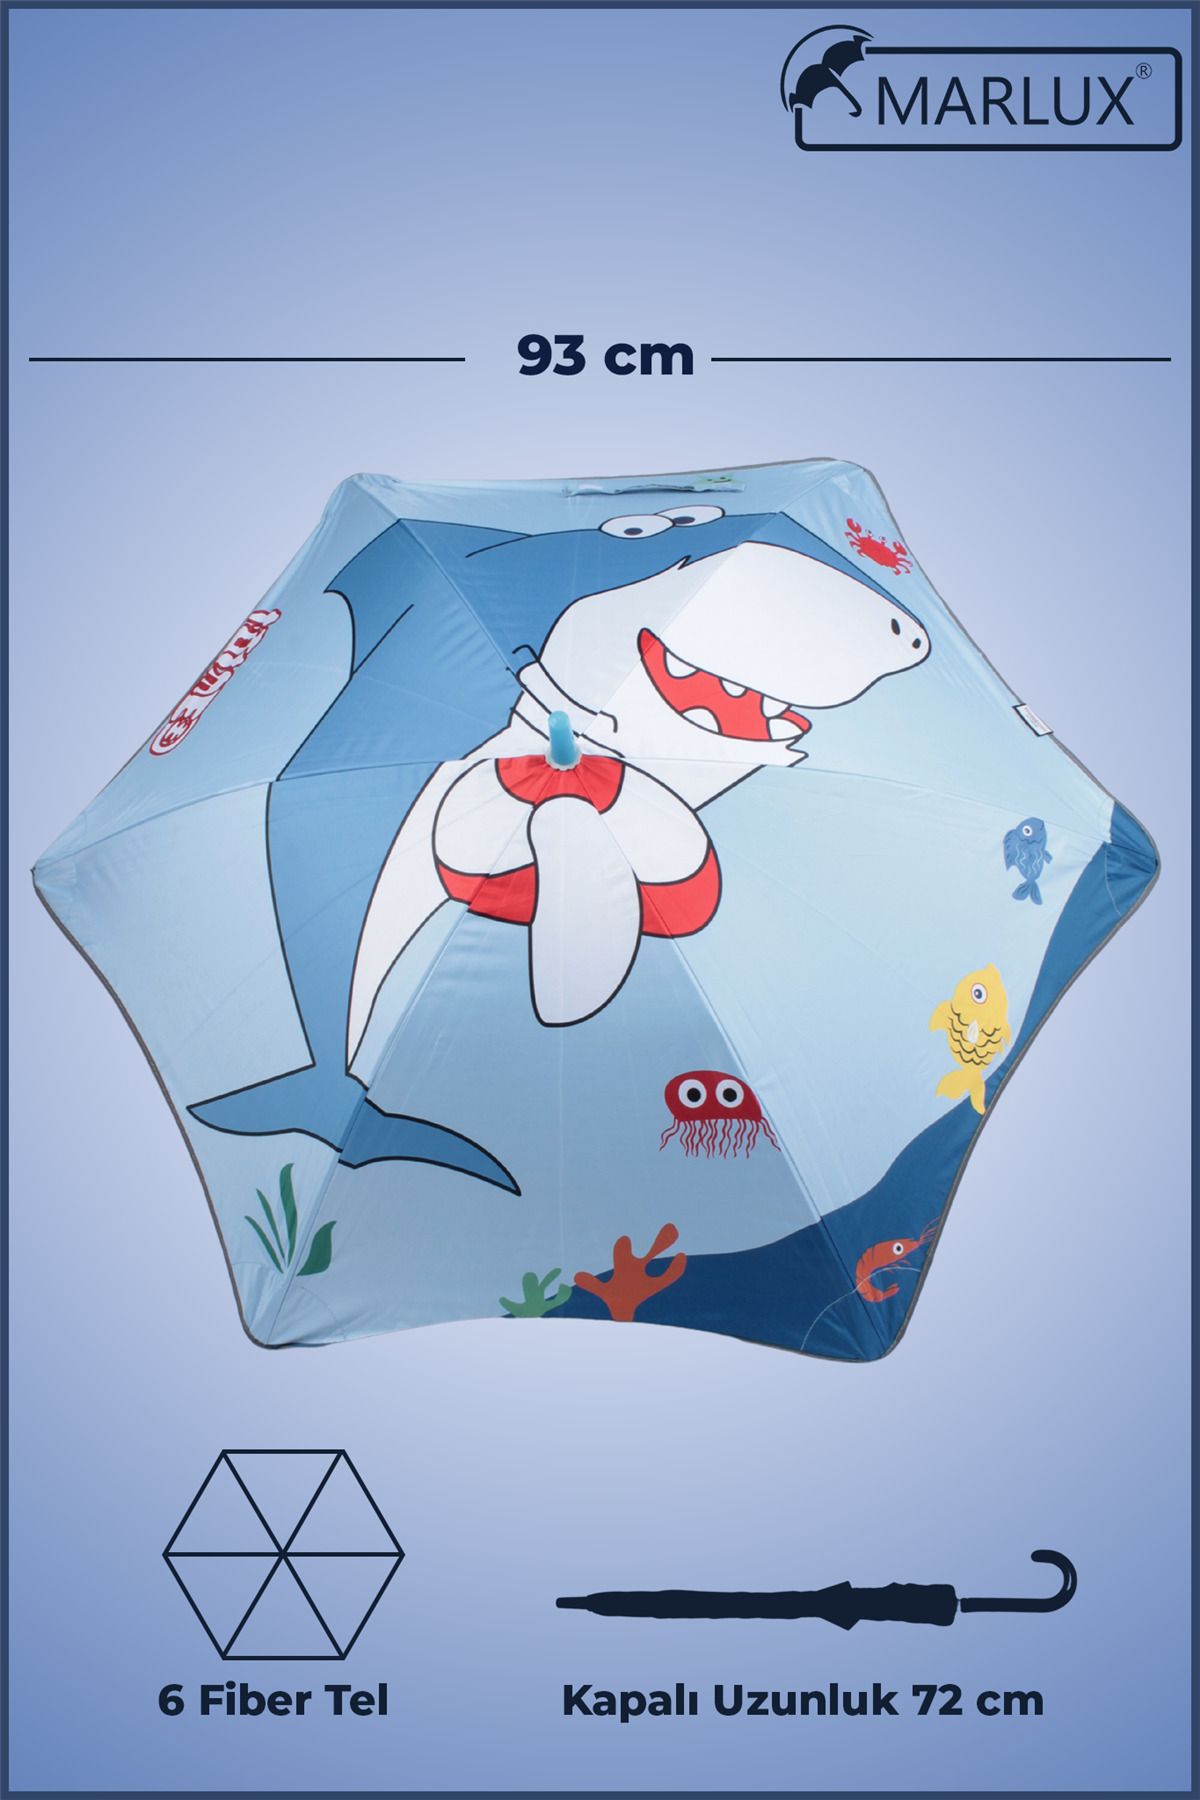 Marlux Fiber 6 Telli Dayanıklı Özel Tasarım Çocuk Şemsiyesi Sevimli Balık Desenli Mar1099